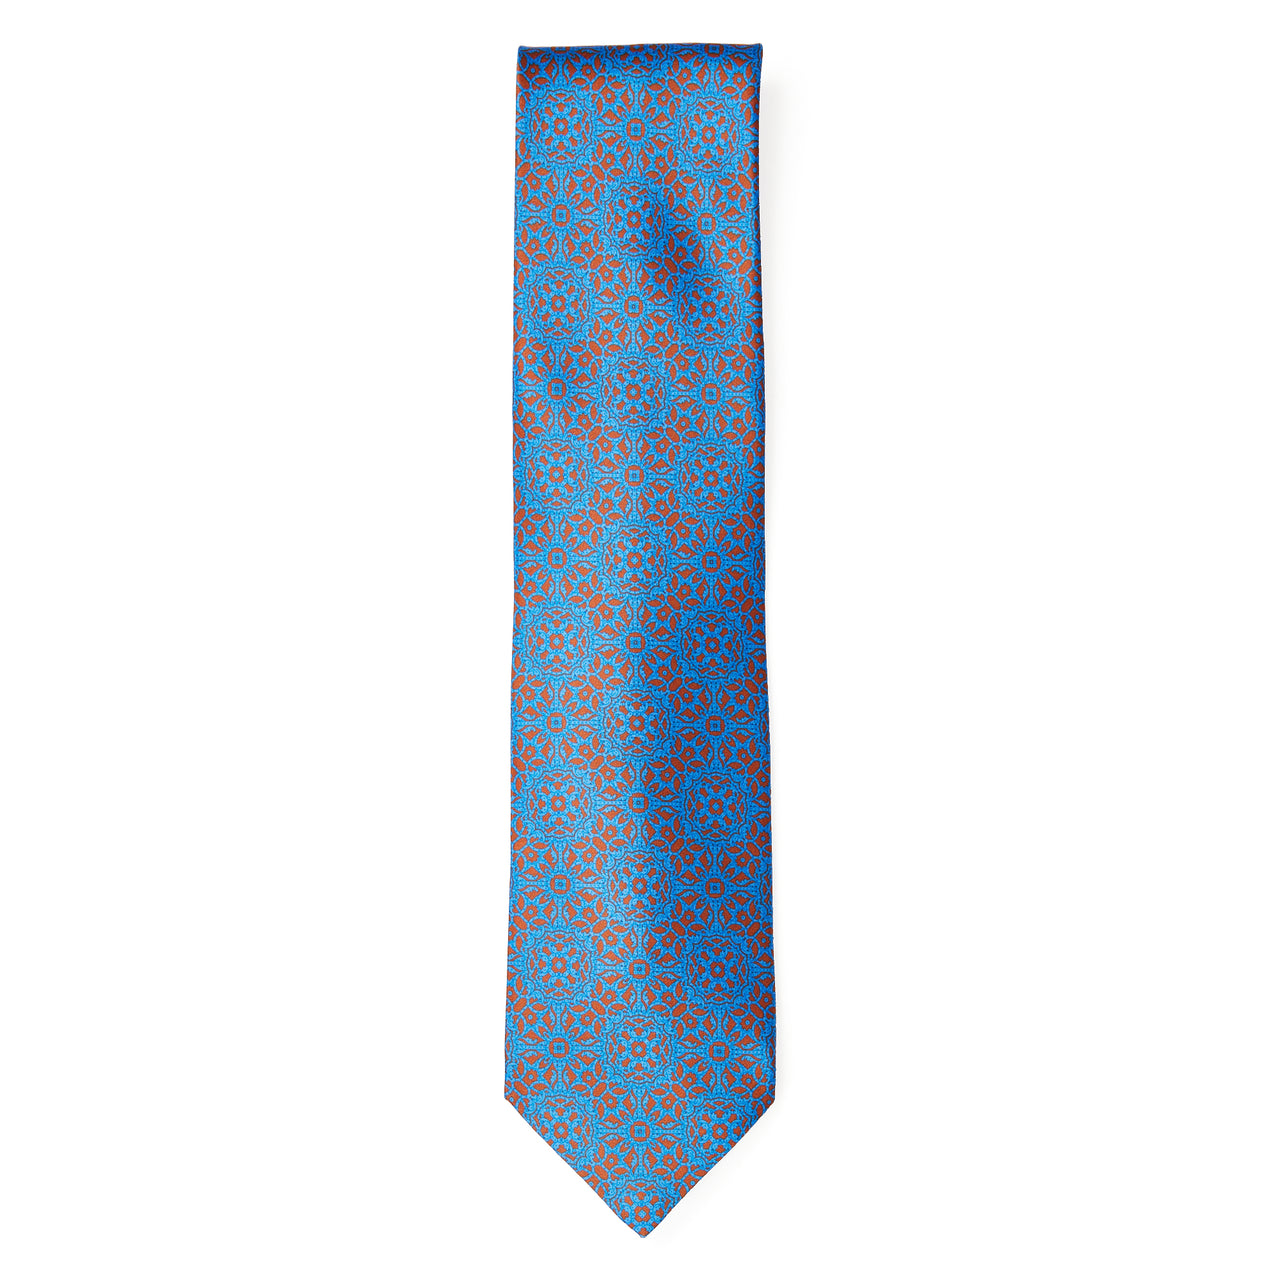 STEFANO RICCI Luxury Hand Made Silk Tie BLUE/ORANGE